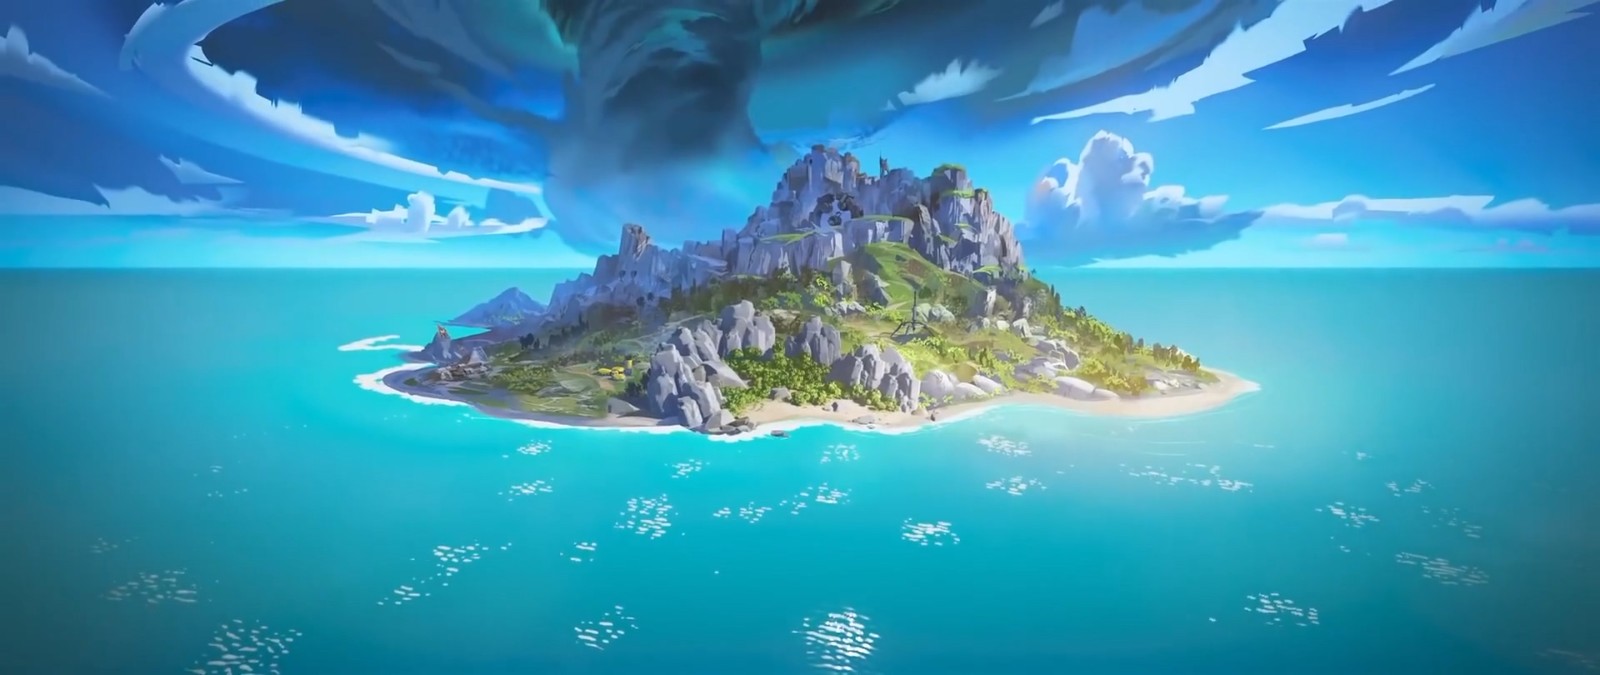 《Apex英雄》第11赛季宣传片 新海岛地图曝光